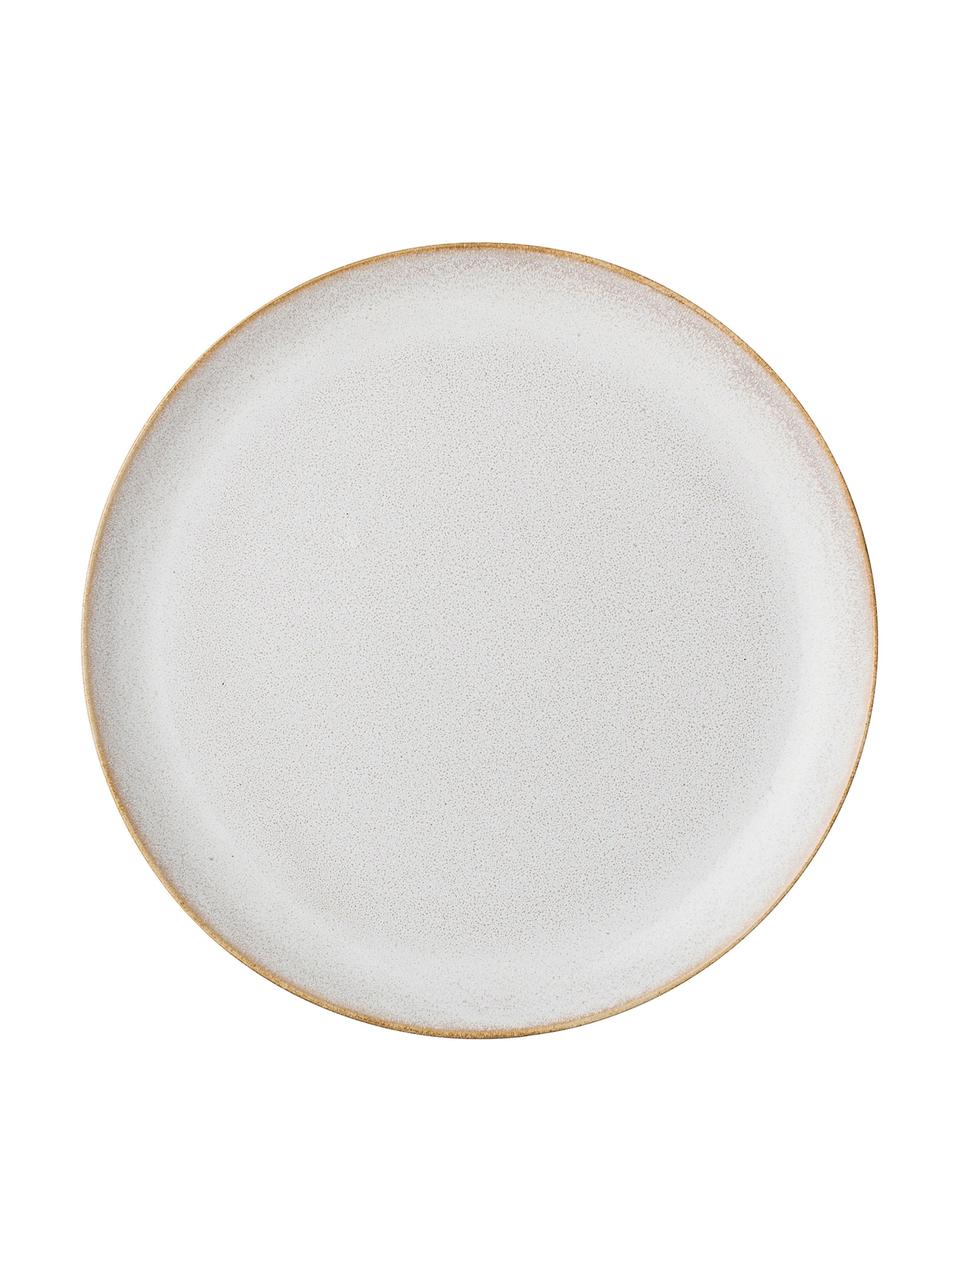 Ručně vyrobený talíř Carrie, 4 ks, Světle bílá, hnědá